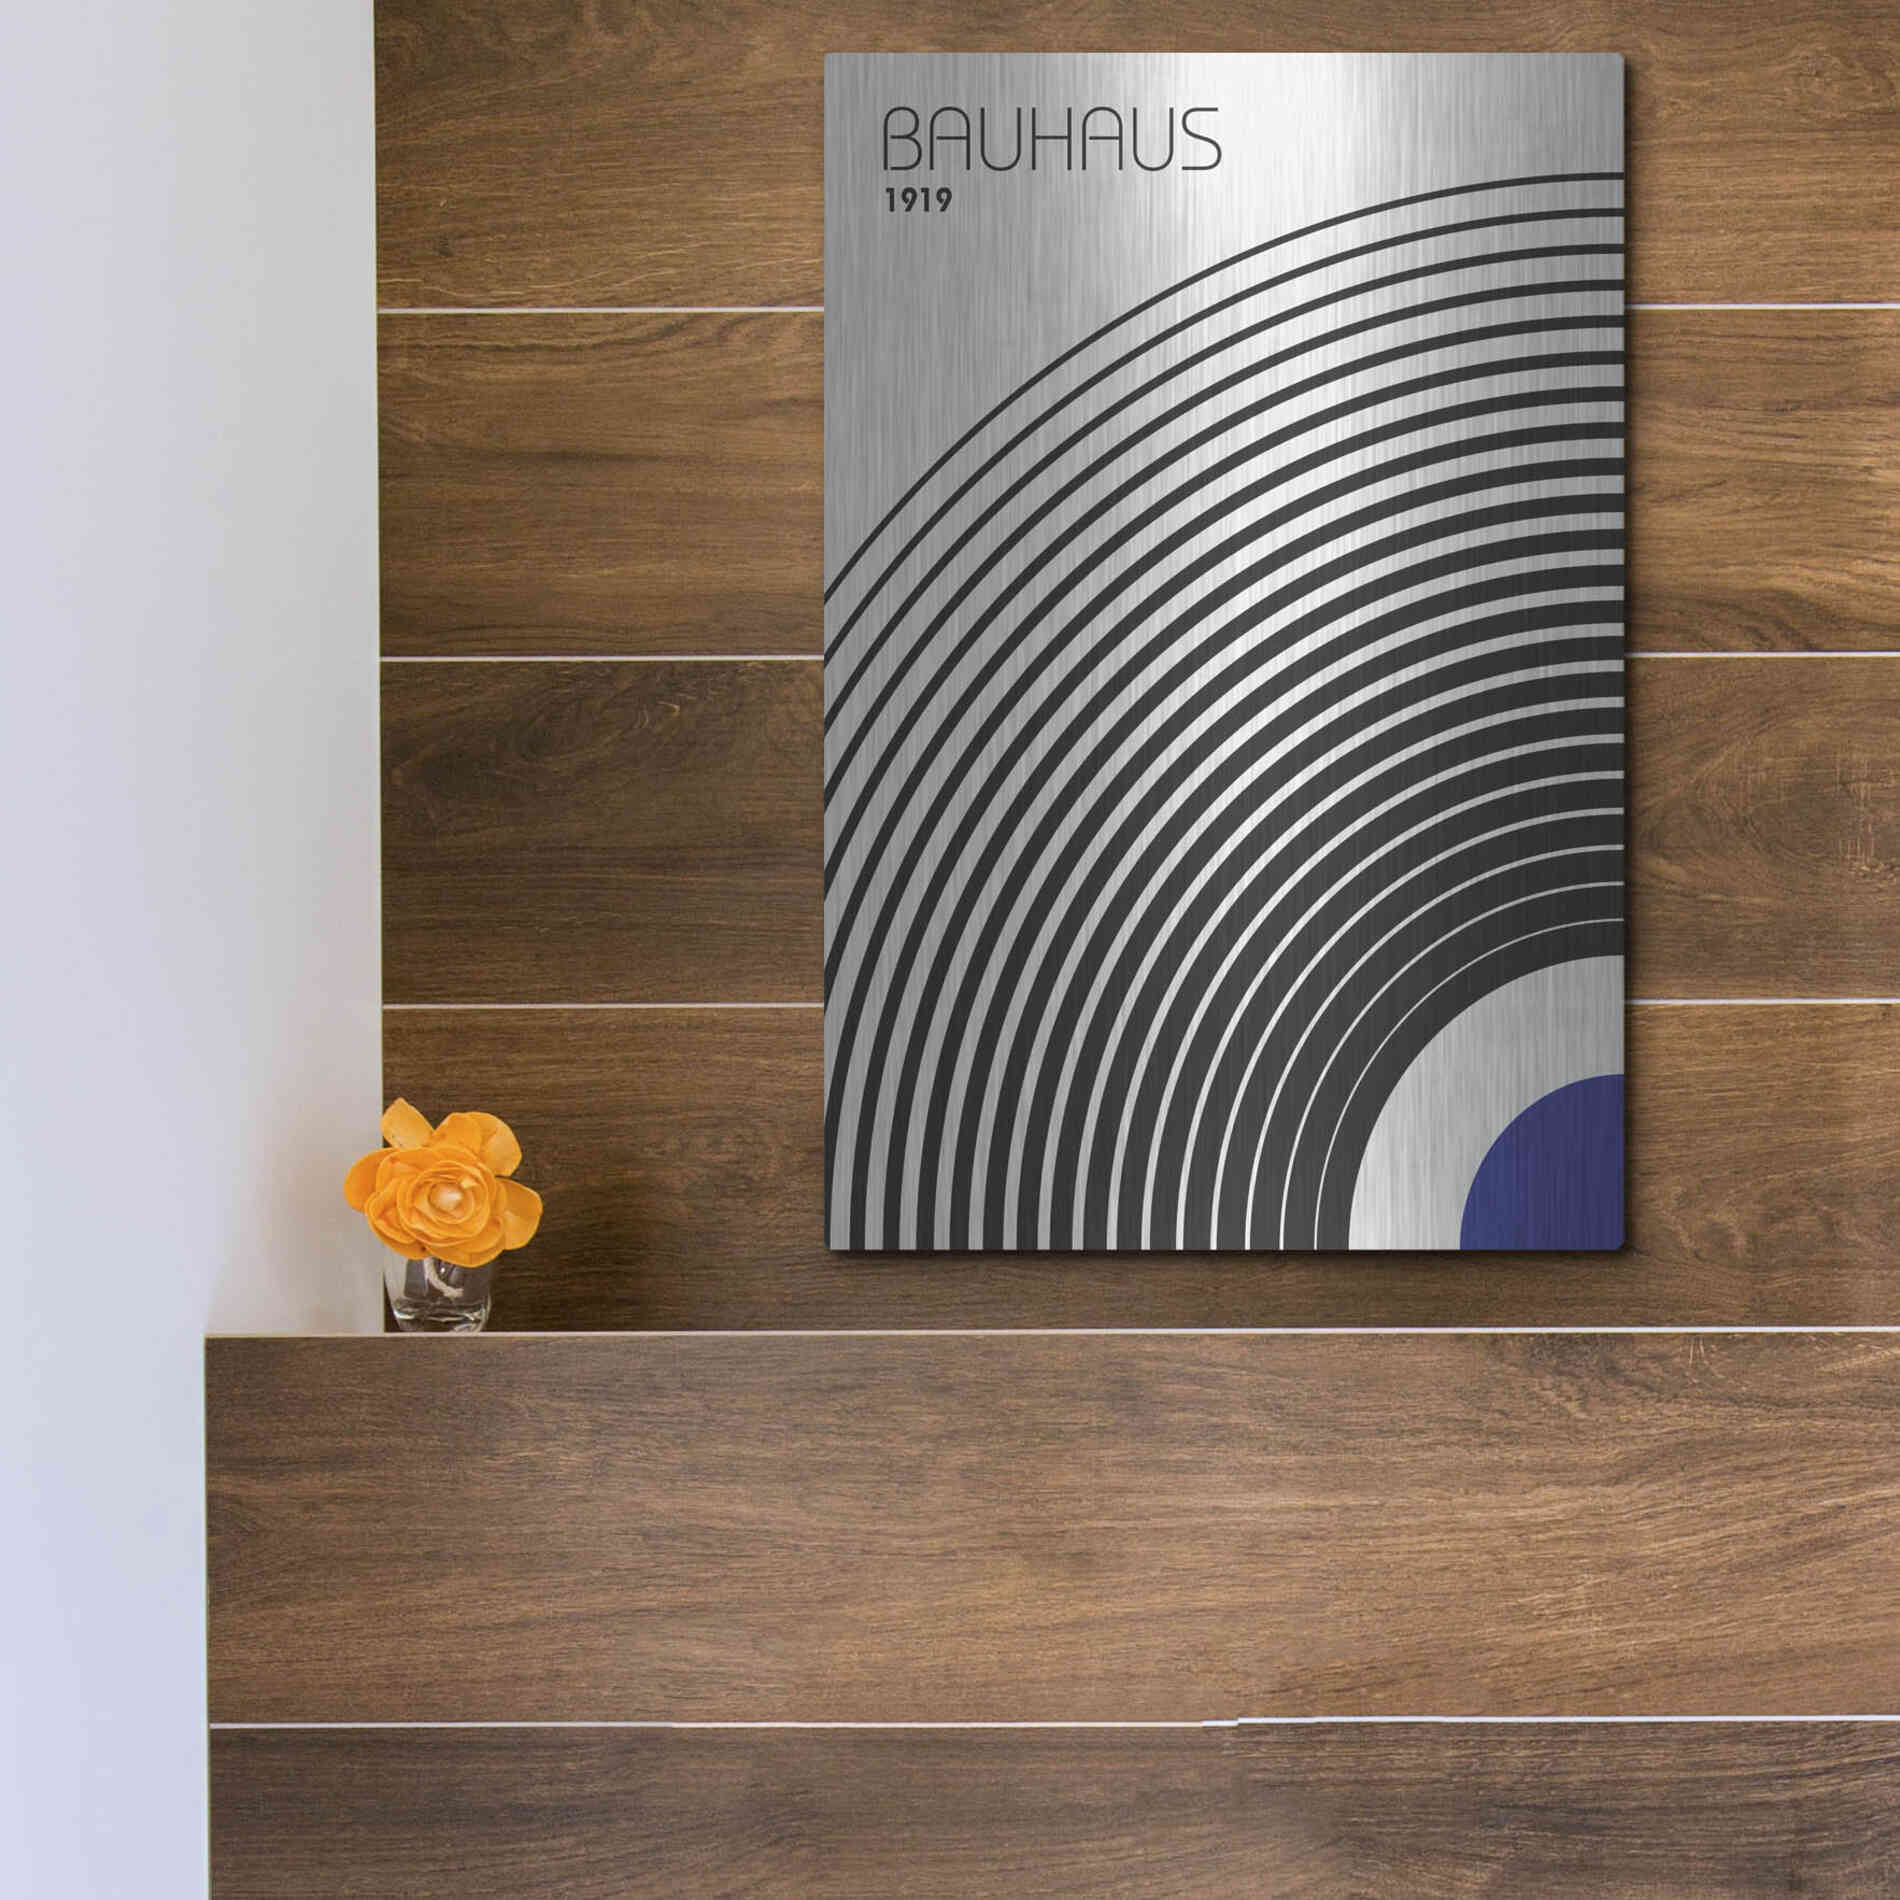 Luxe Metal Art 'Bauhaus 4' by Design Fabrikken, Metal Wall Art,12x16